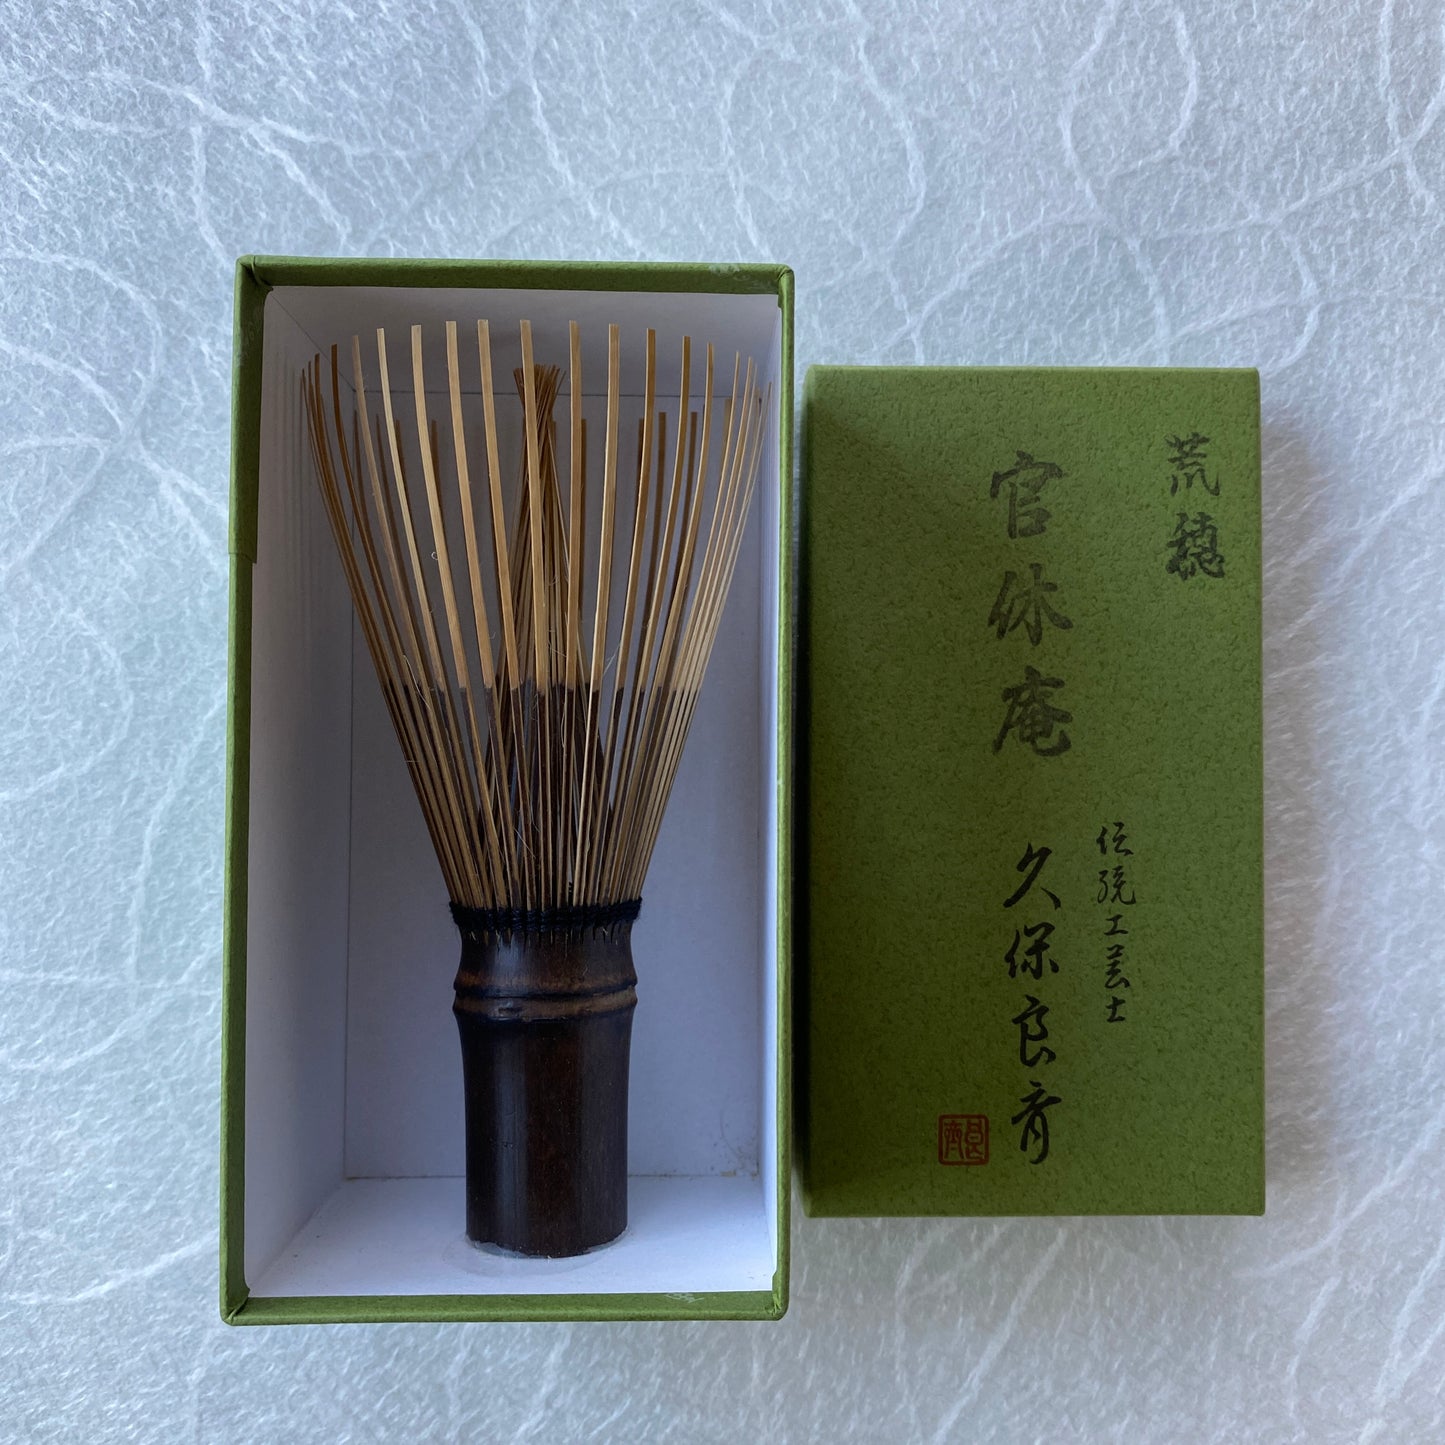 Black Bamboo Whisk, Kurotake Takayama Chasen for Mushanokoji Style l 黒竹 高山茶筅 武者小路 官休庵 荒穂 濃茶用